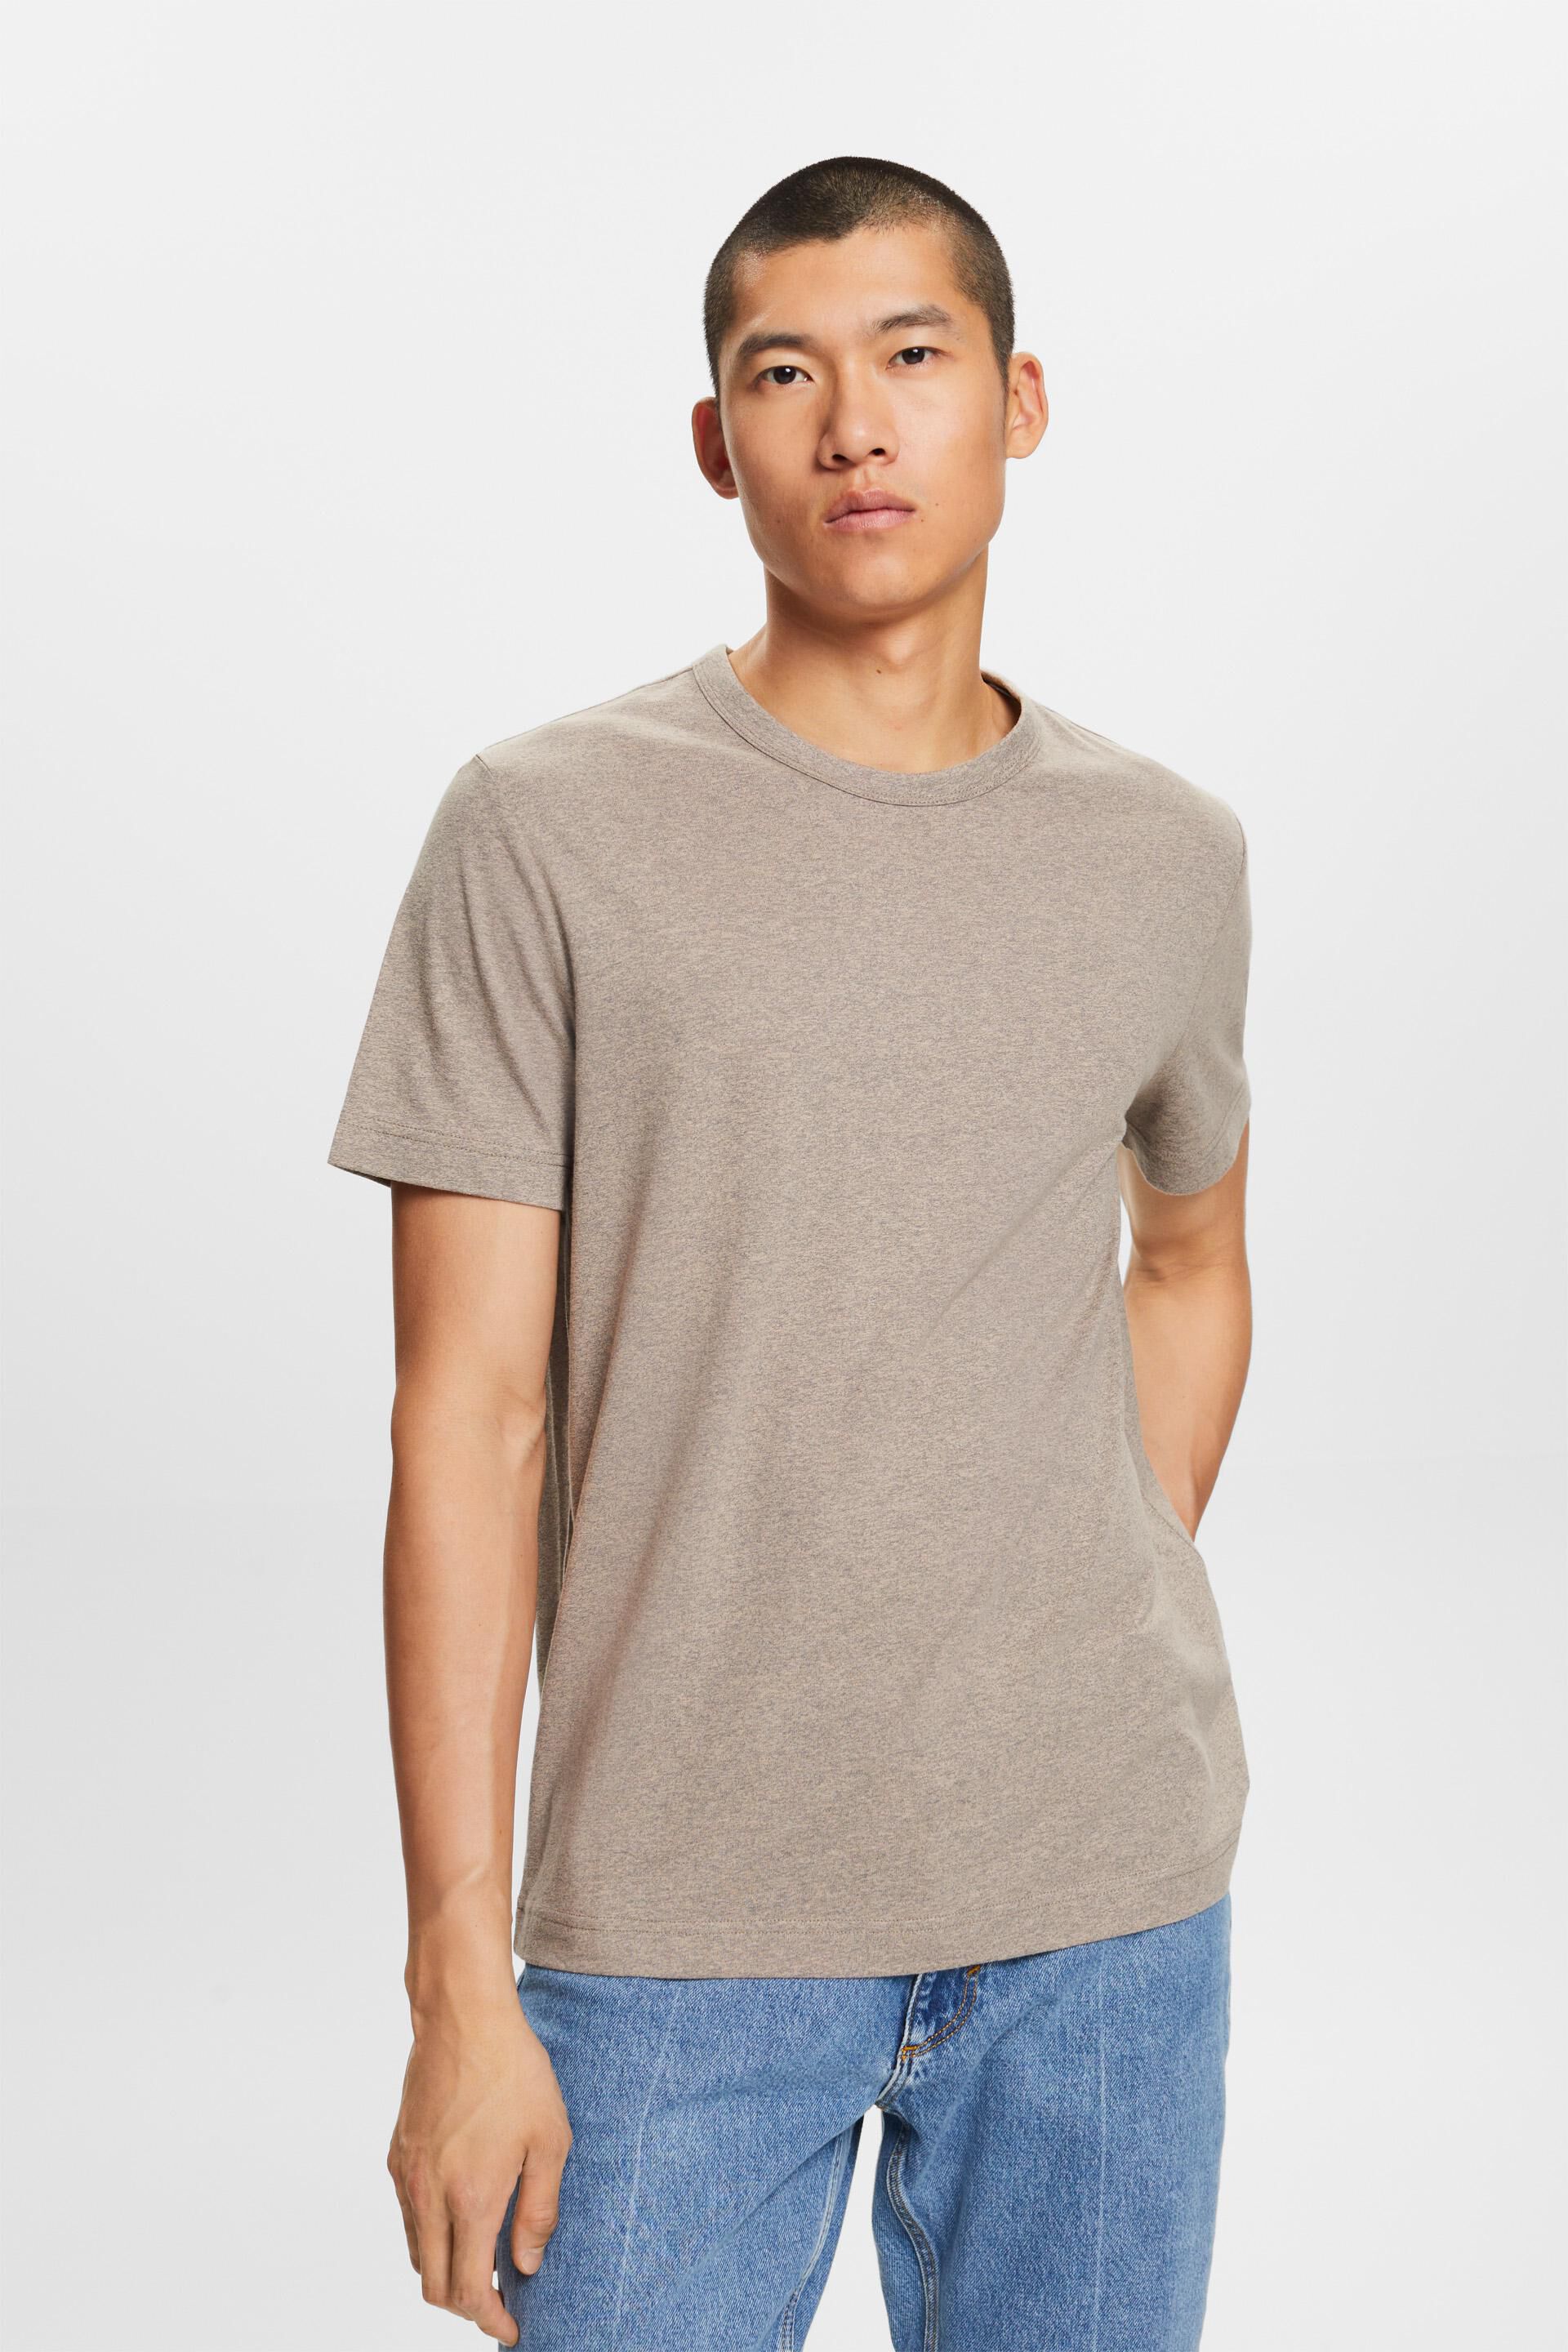 Esprit Baumwollmischung mit Rundhalsausschnitt, Jersey-T-Shirt